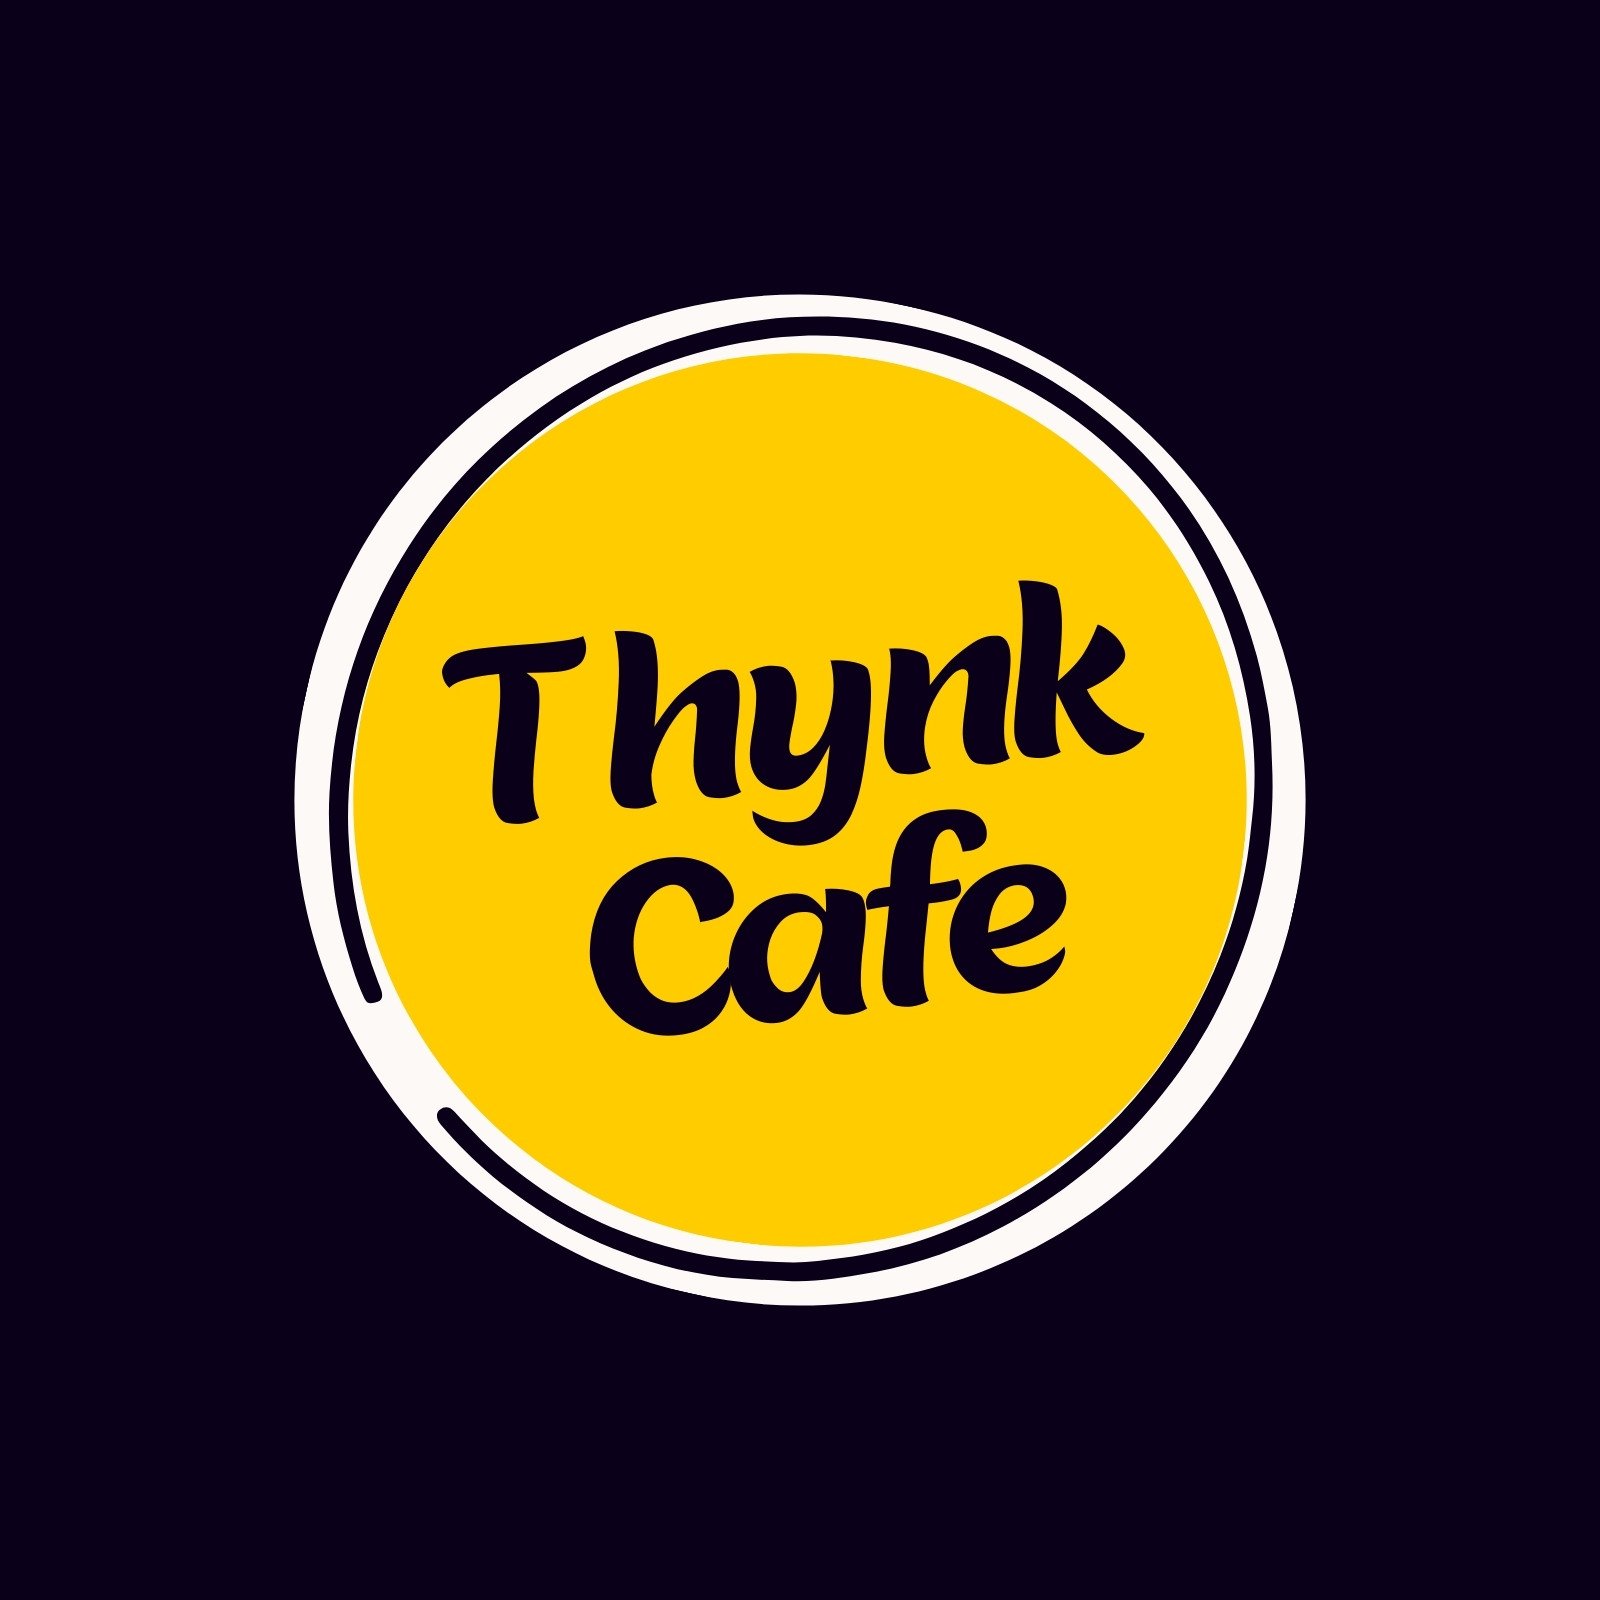 Yellow Minimalist Round Shaped Cafe Logo